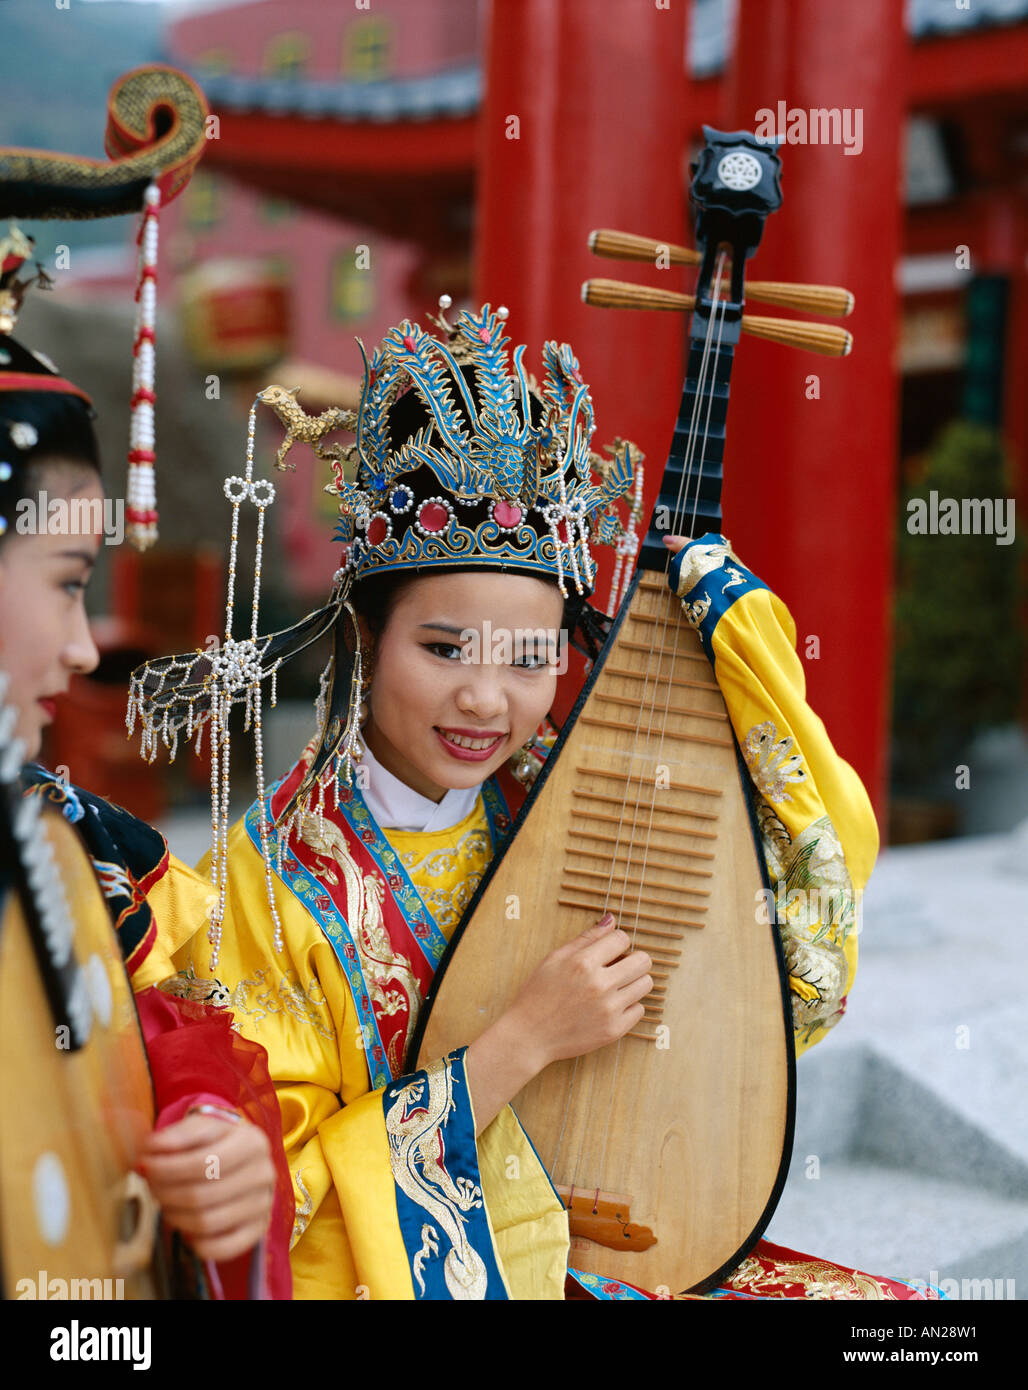 Frauen gekleidet in traditionellen Kostümen spielen drei saitige laute, Peking, China Stockfoto